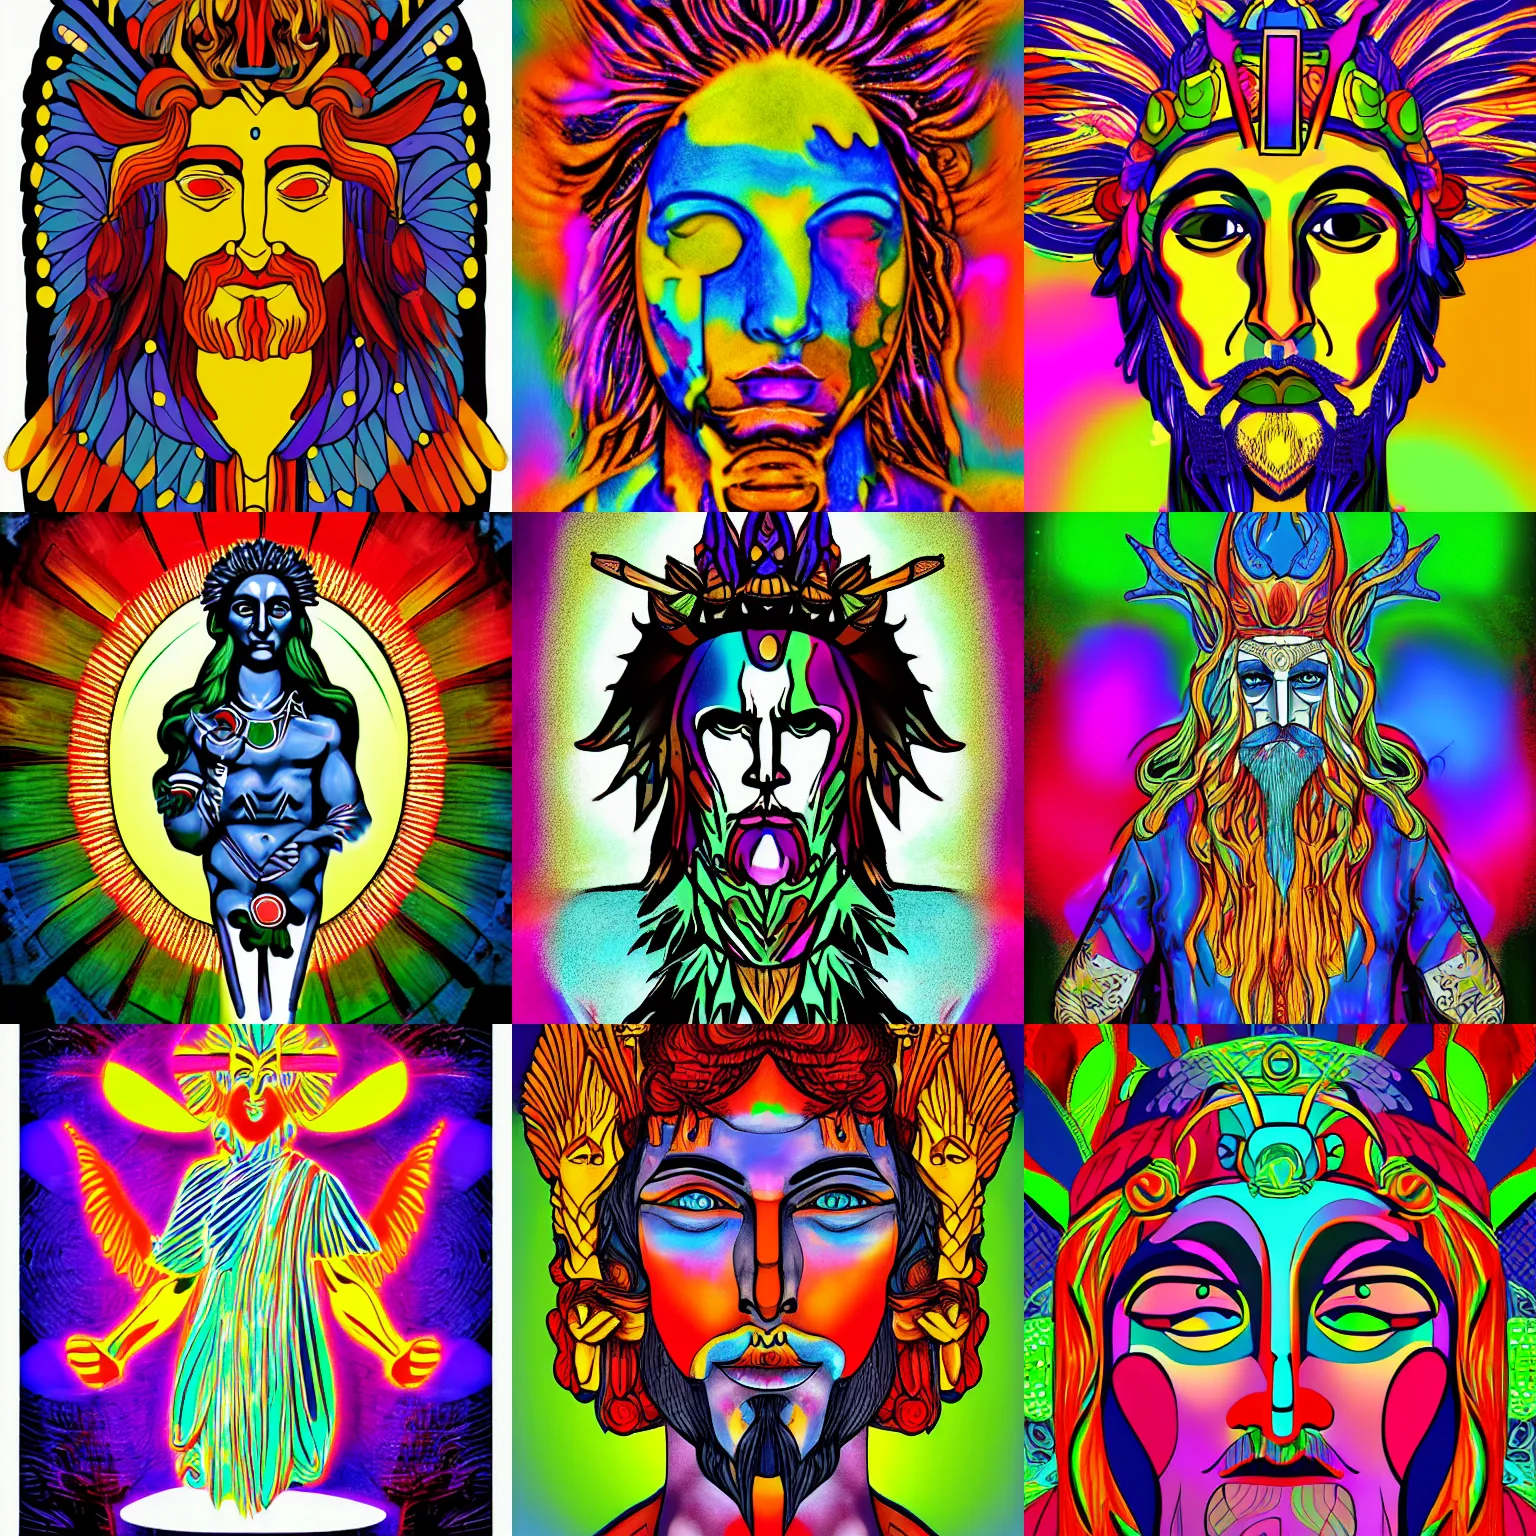 Prompt: Pagan god of color, digital art